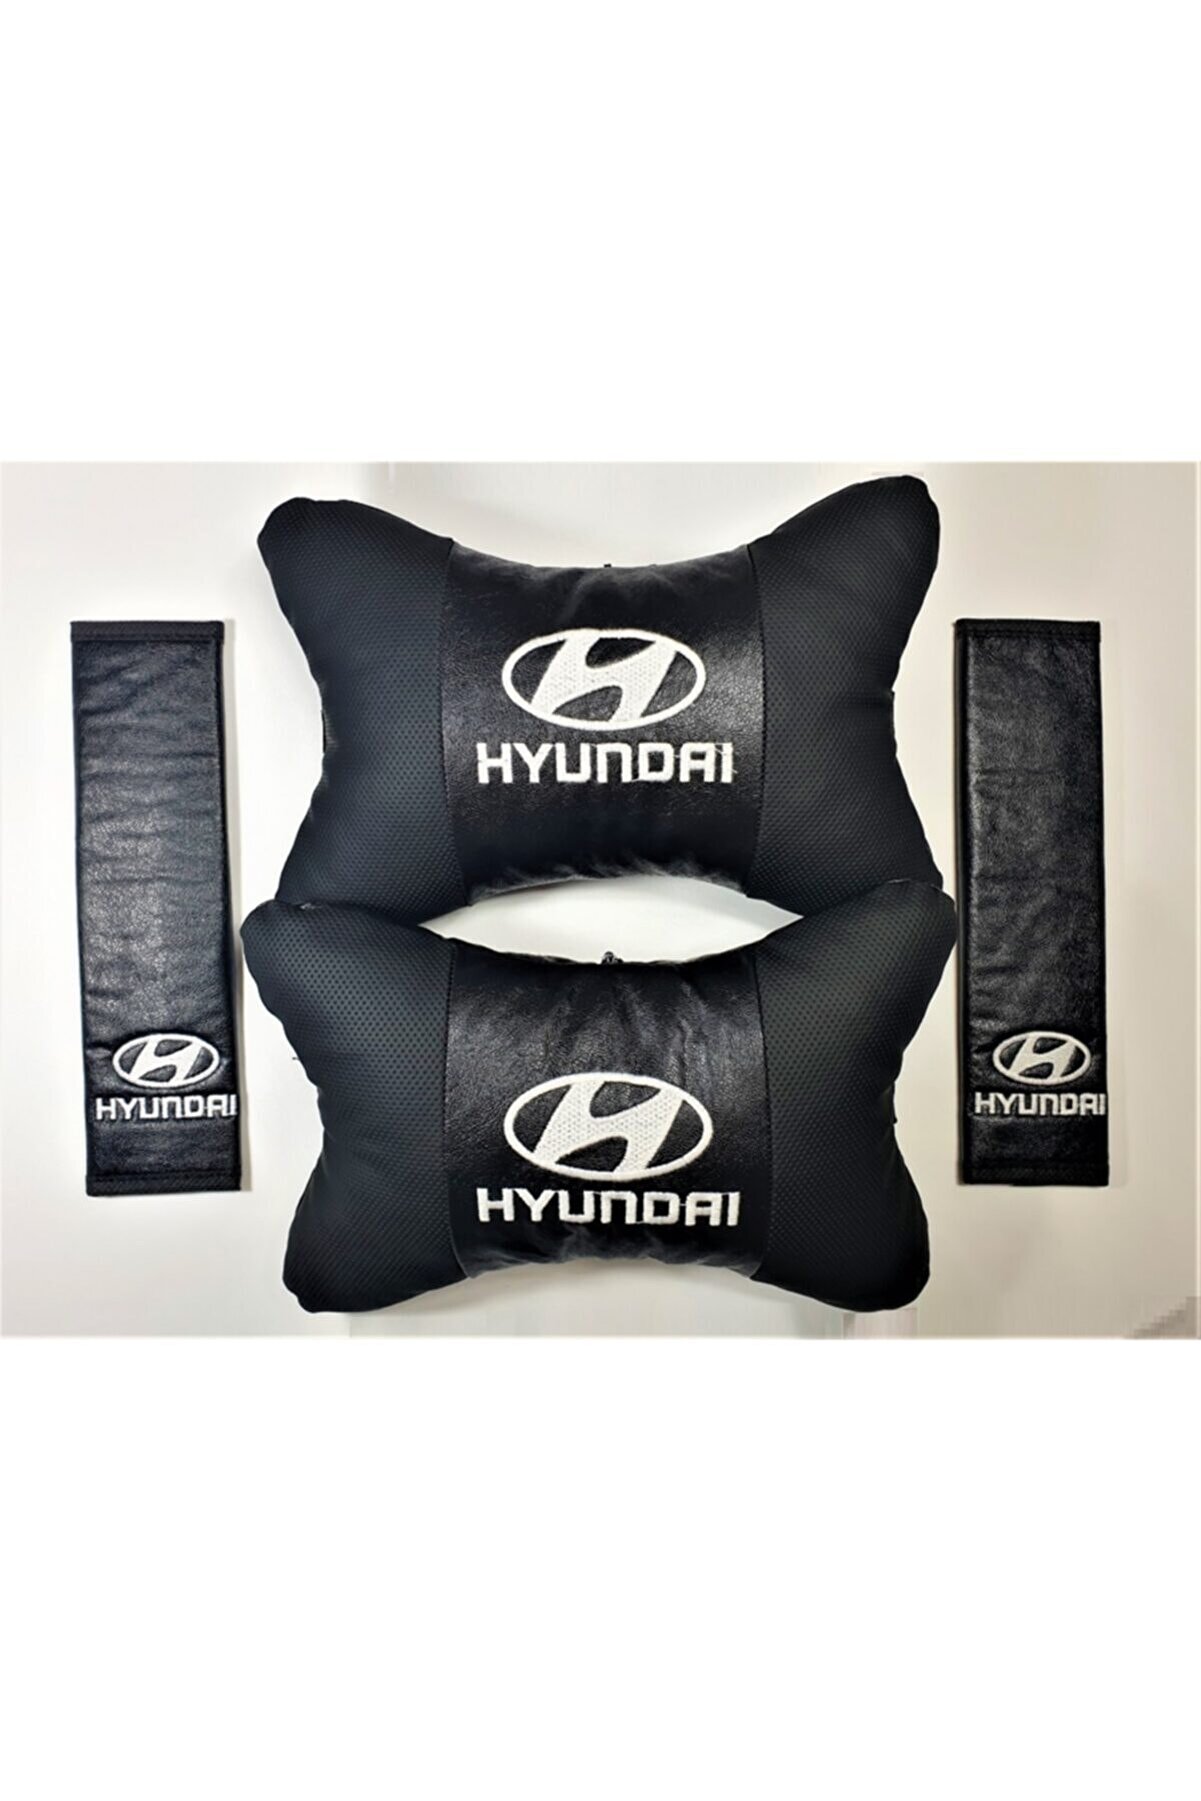 BsElektronik Hyundai Papyon Yastık Boyun Yastığı + Emniyet Kemeri Kılıfı Takım Beyaz Logo